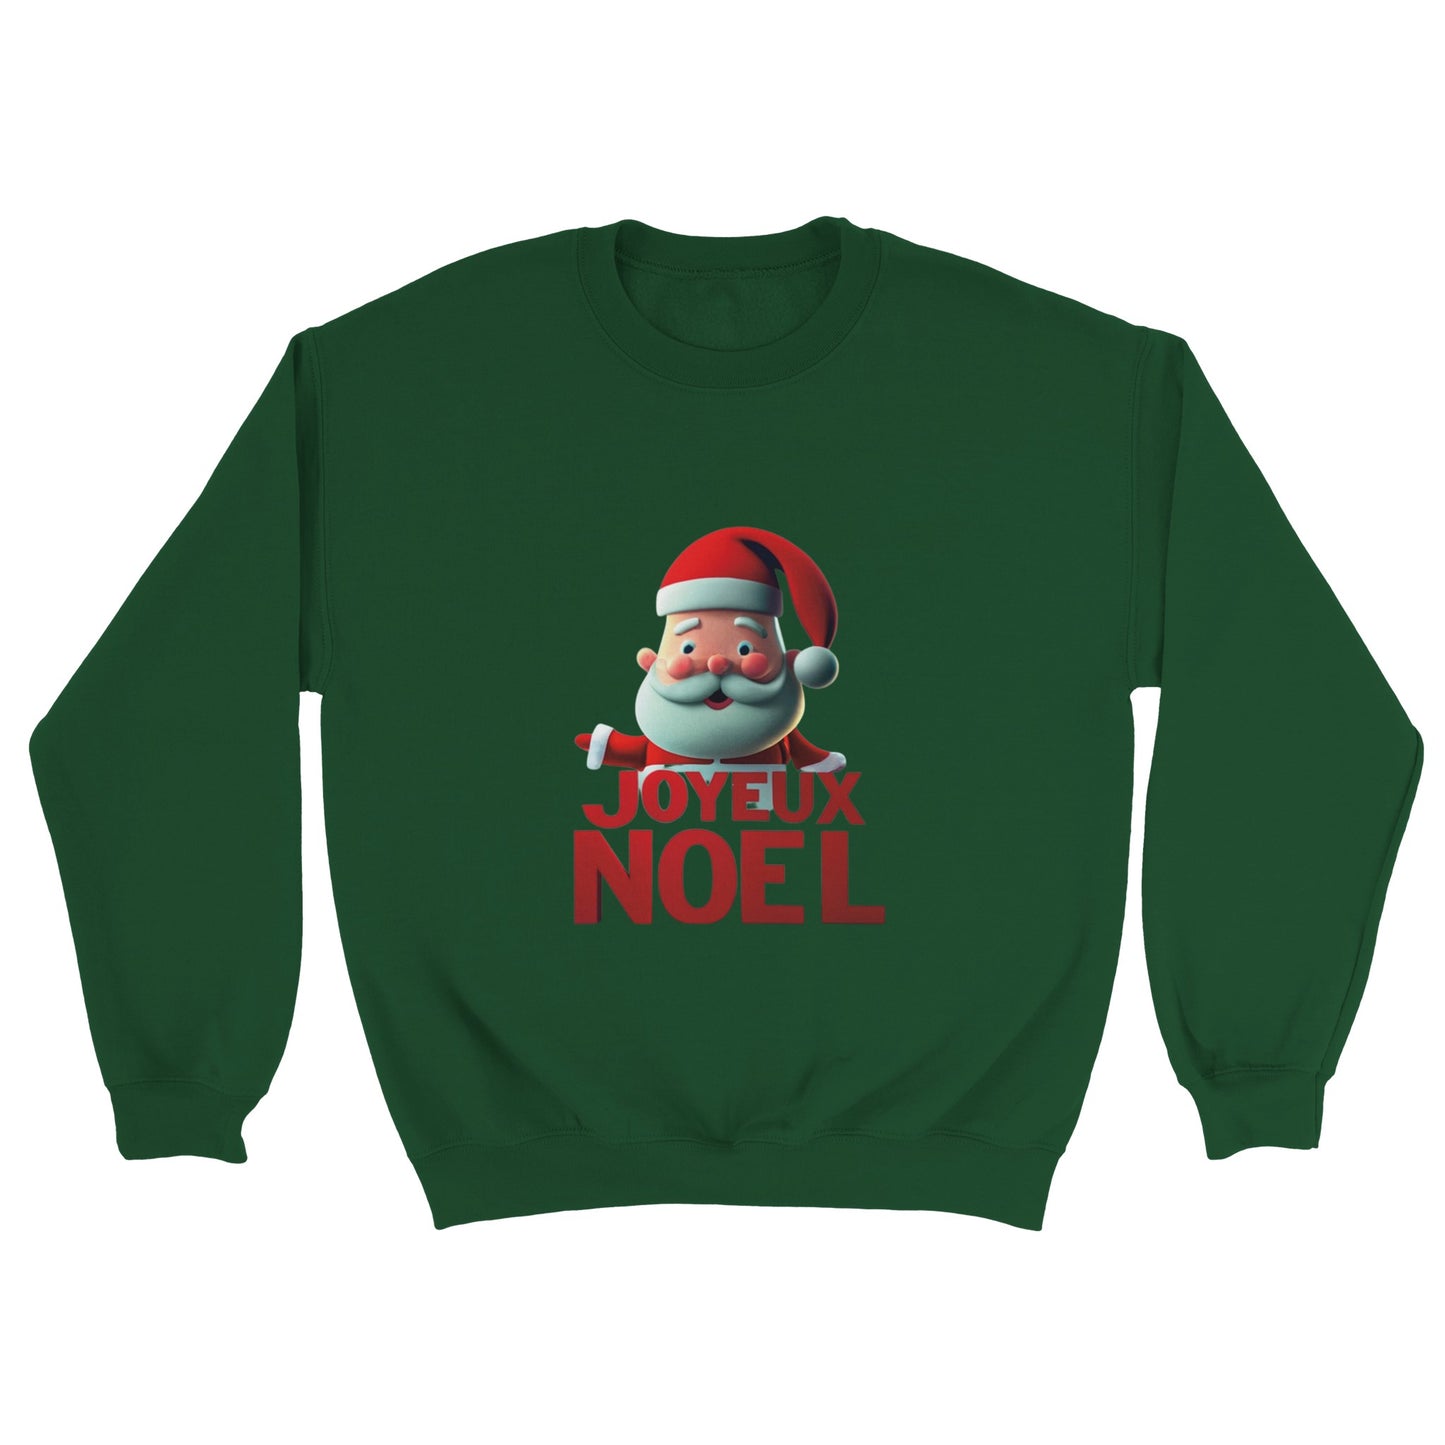 Joyeux Noel Christmas Family Sweatshirt